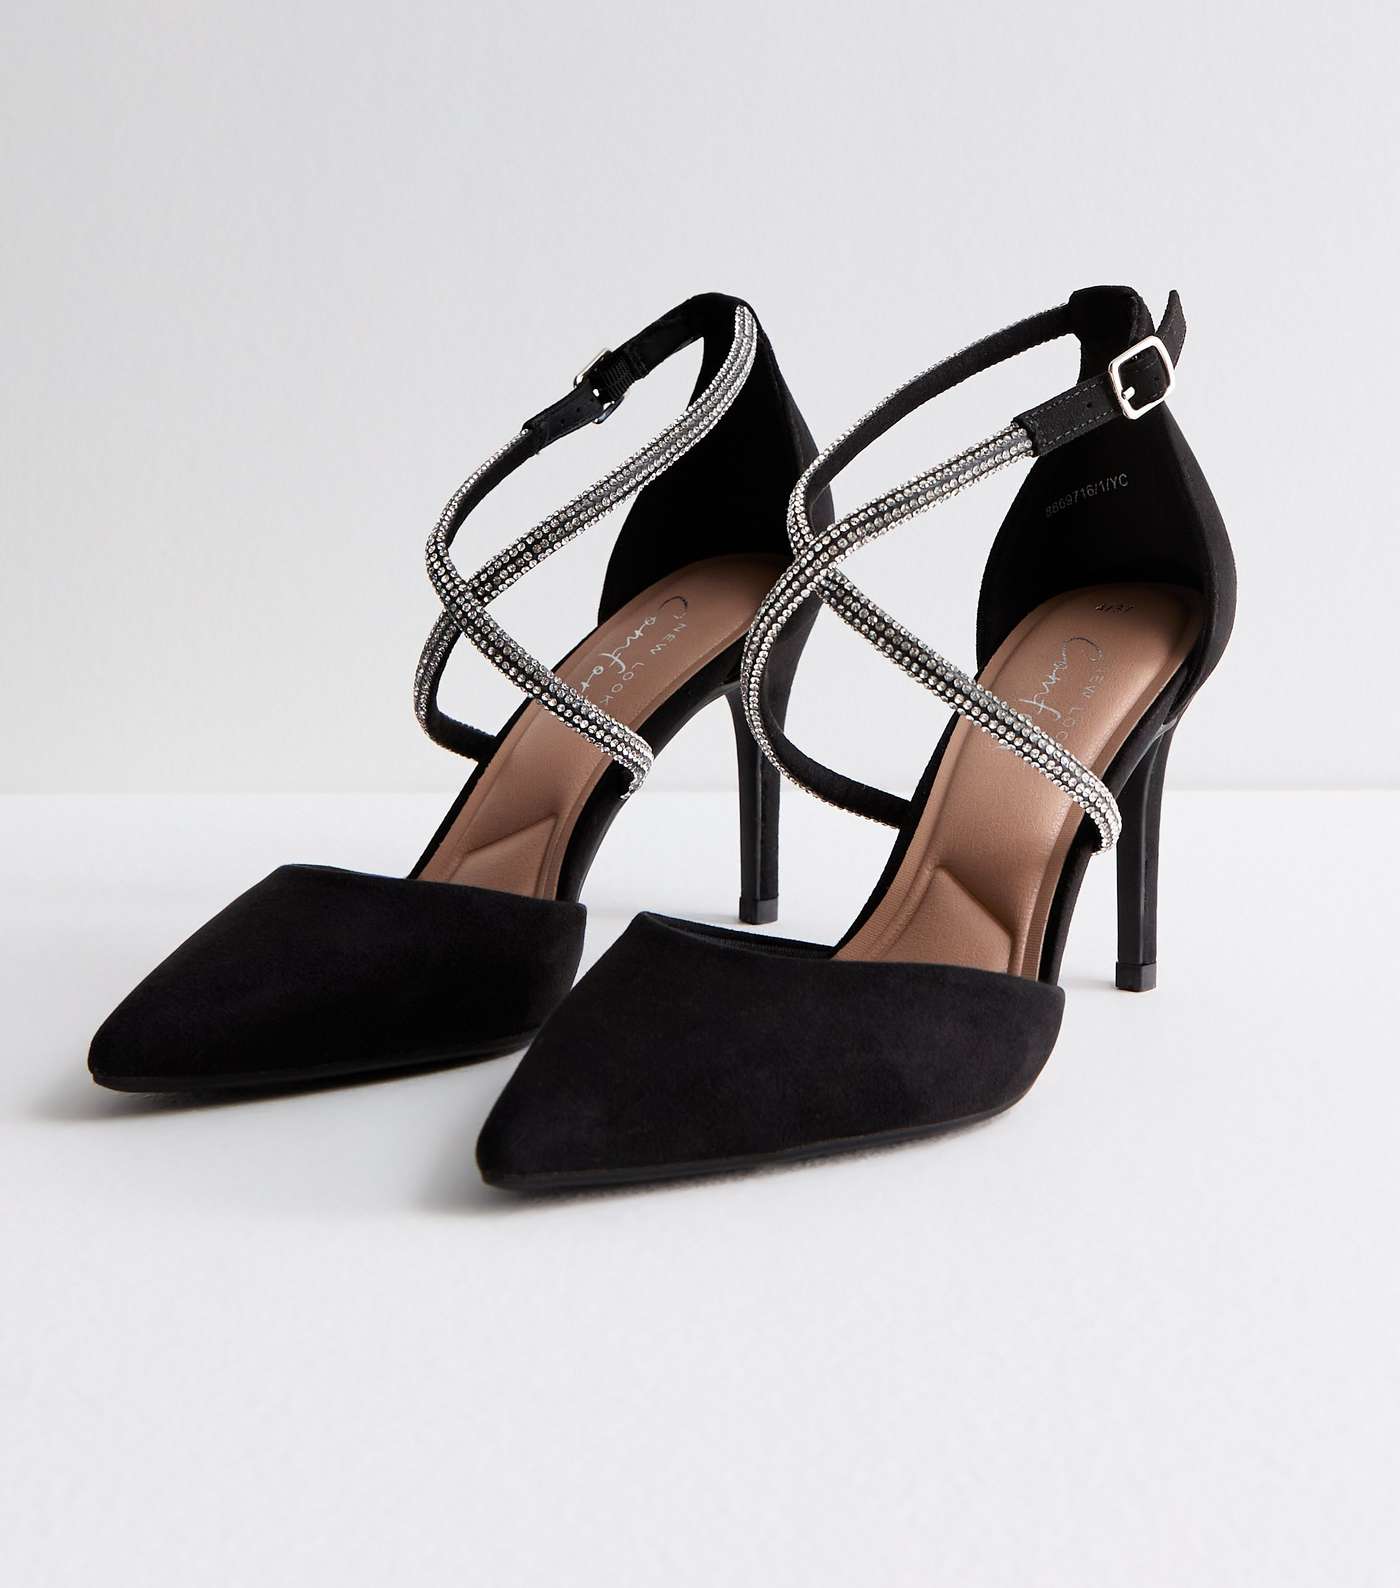 Black Suedette Diamanté Stiletto Heel Court Shoes